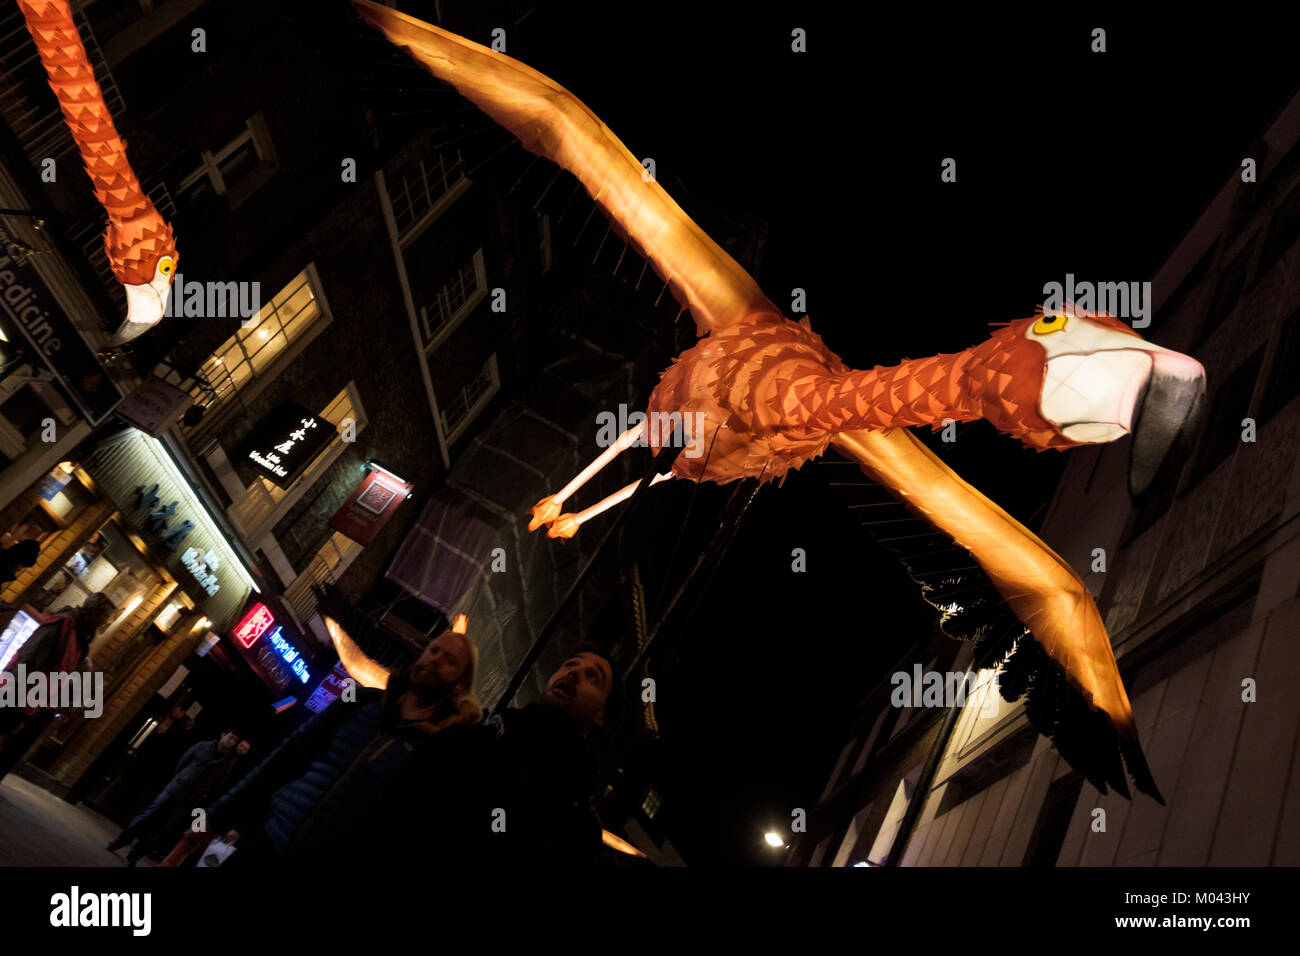 London, Großbritannien. 18. Januar 2018. Lumiere London licht Festival kehrt zum zweiten Mal. Mehr als 50 Kunstwerke die Straßen der Hauptstadt verwandeln in ein schillerndes nächtliches freie Kunst Ausstellung. Über eine Million Besucher nahmen an den vier Tagen des ersten Lumiere London Festival im Jahr 2016. Lumiere London läuft noch bis zum 21. Januar 2018. Im Bild: Flamingo Flyway, außergewöhnliche Flamme - bunte Vögel, die durch die je-phantasievolle Laternen Unternehmen mit Jo Pocock (UK), da sie Parade gelassen in Chinatown in London. Das Stück Referenzen die außerordentliche Interkontinentale Migration Routen, die Vögel. Stockfoto